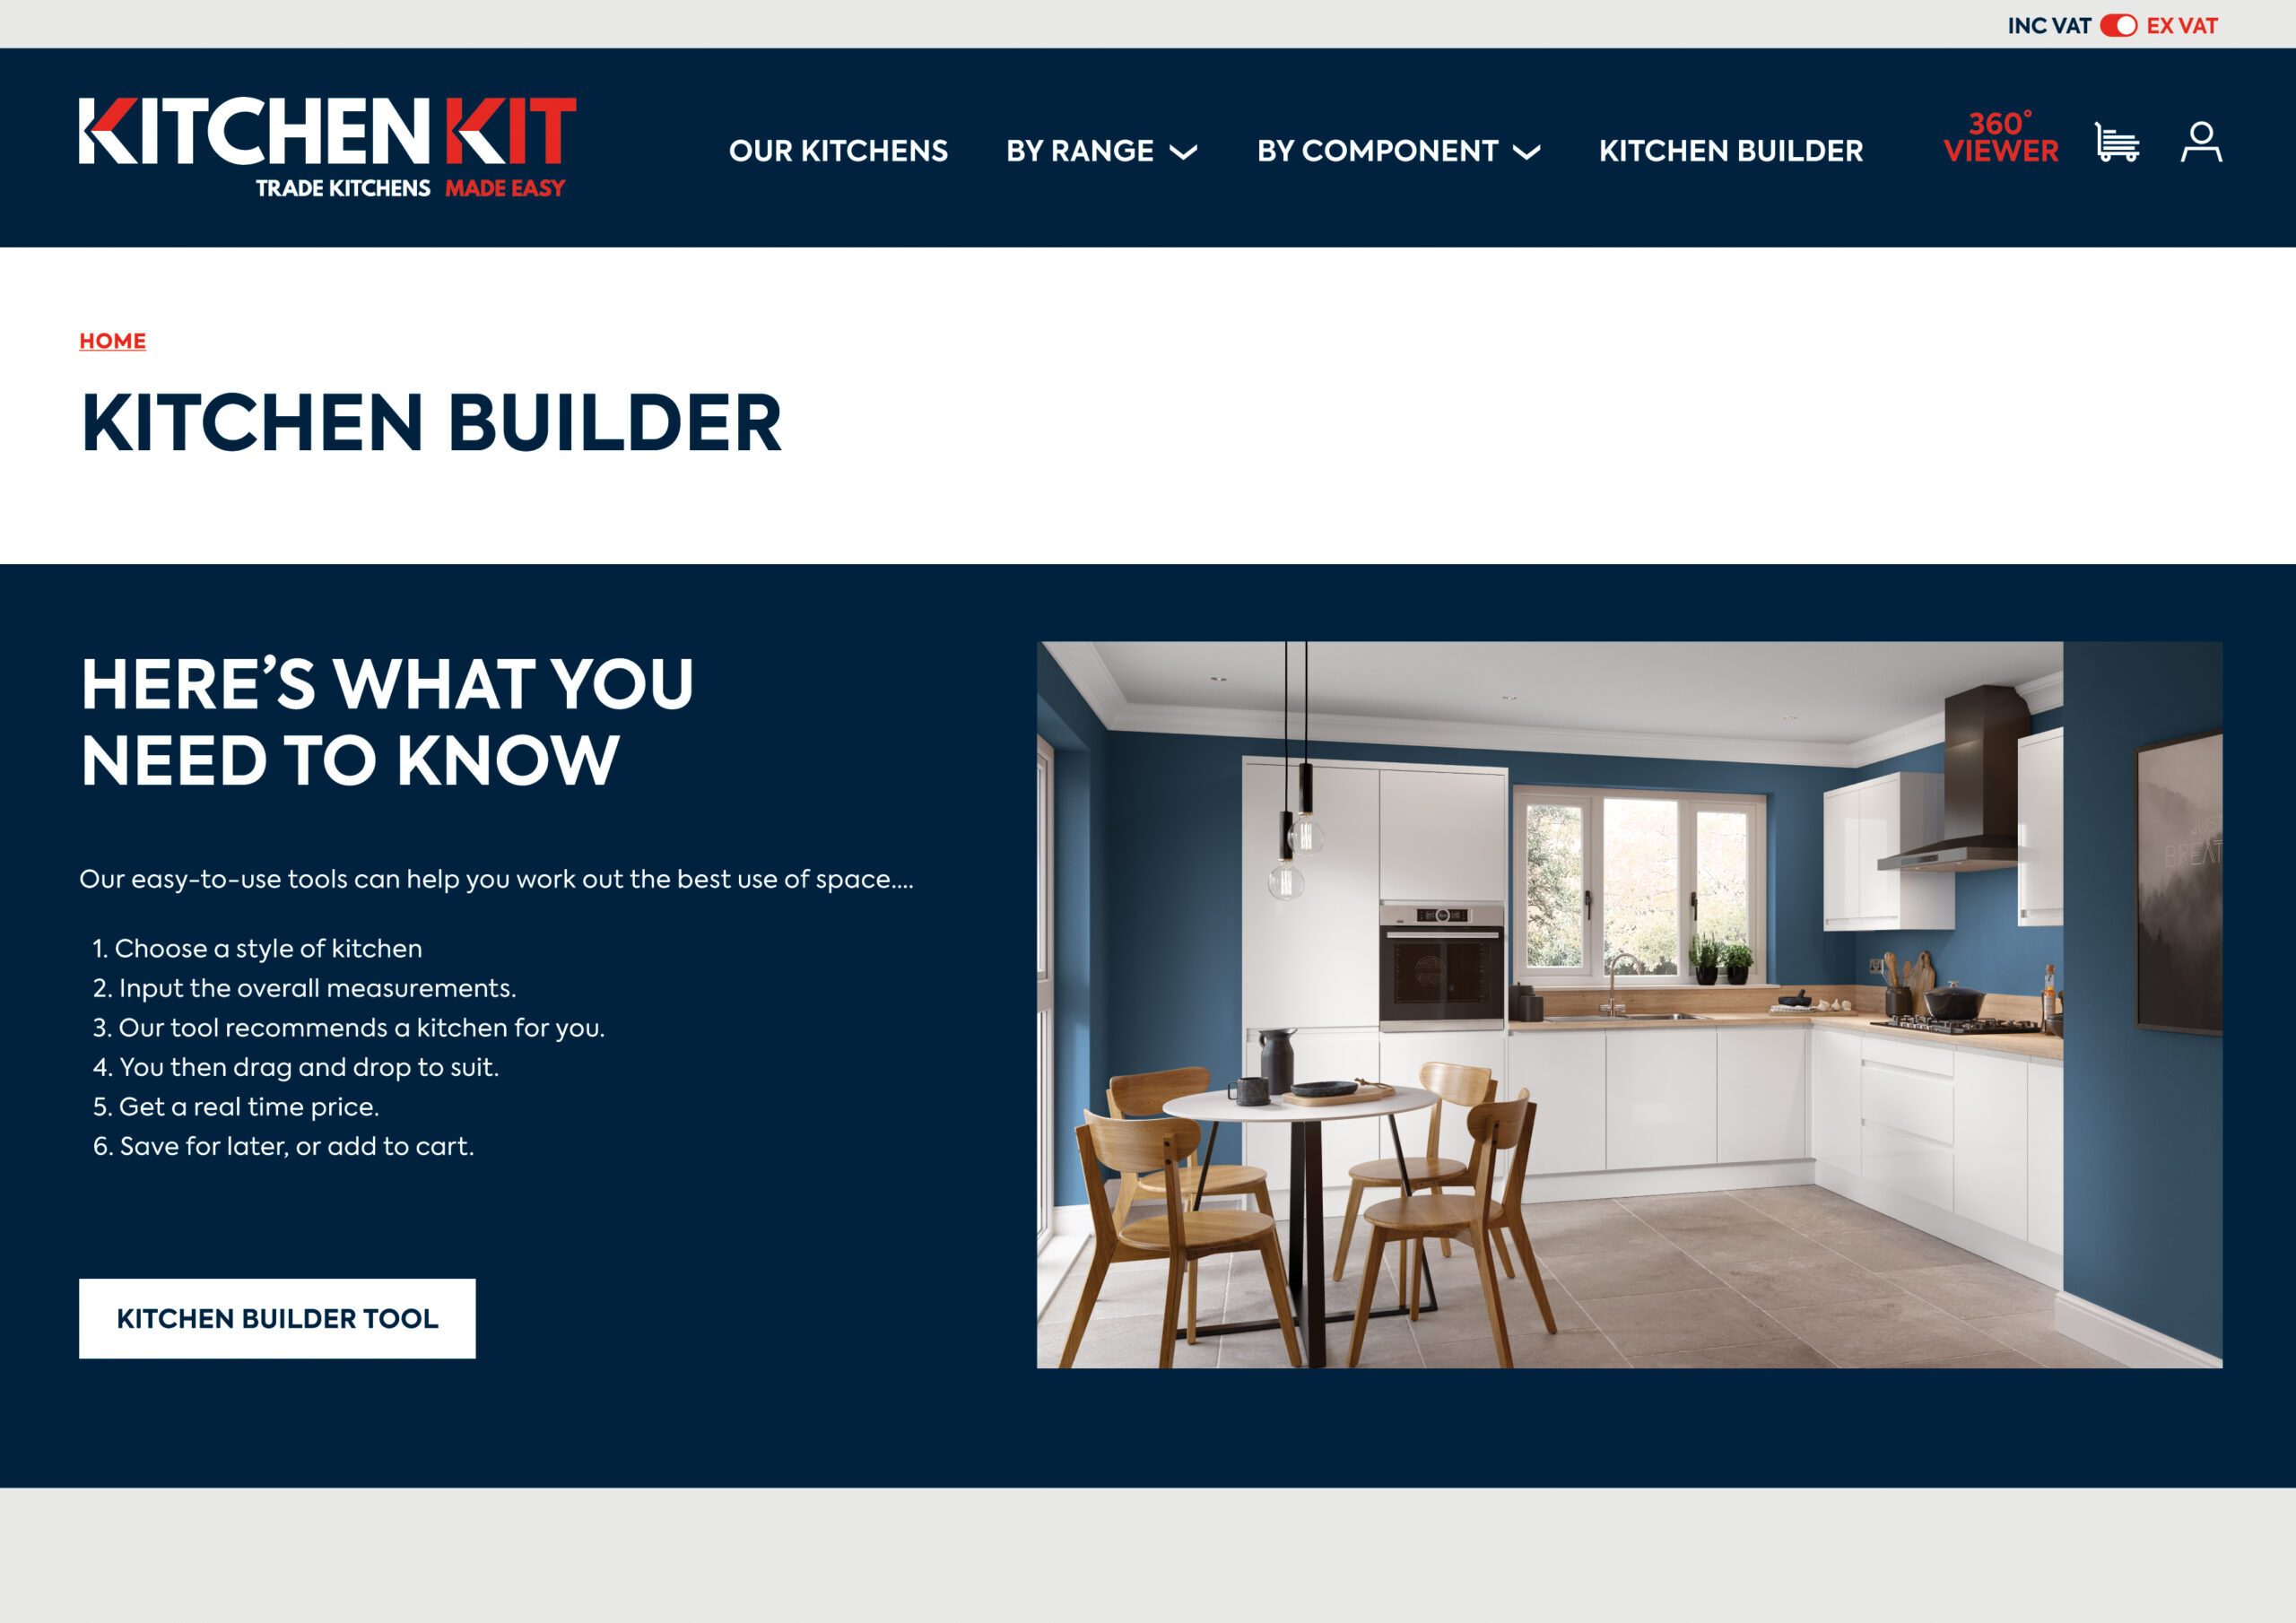 KK Kitchen Builder Web Pages V2 P1 Scaled@1x 